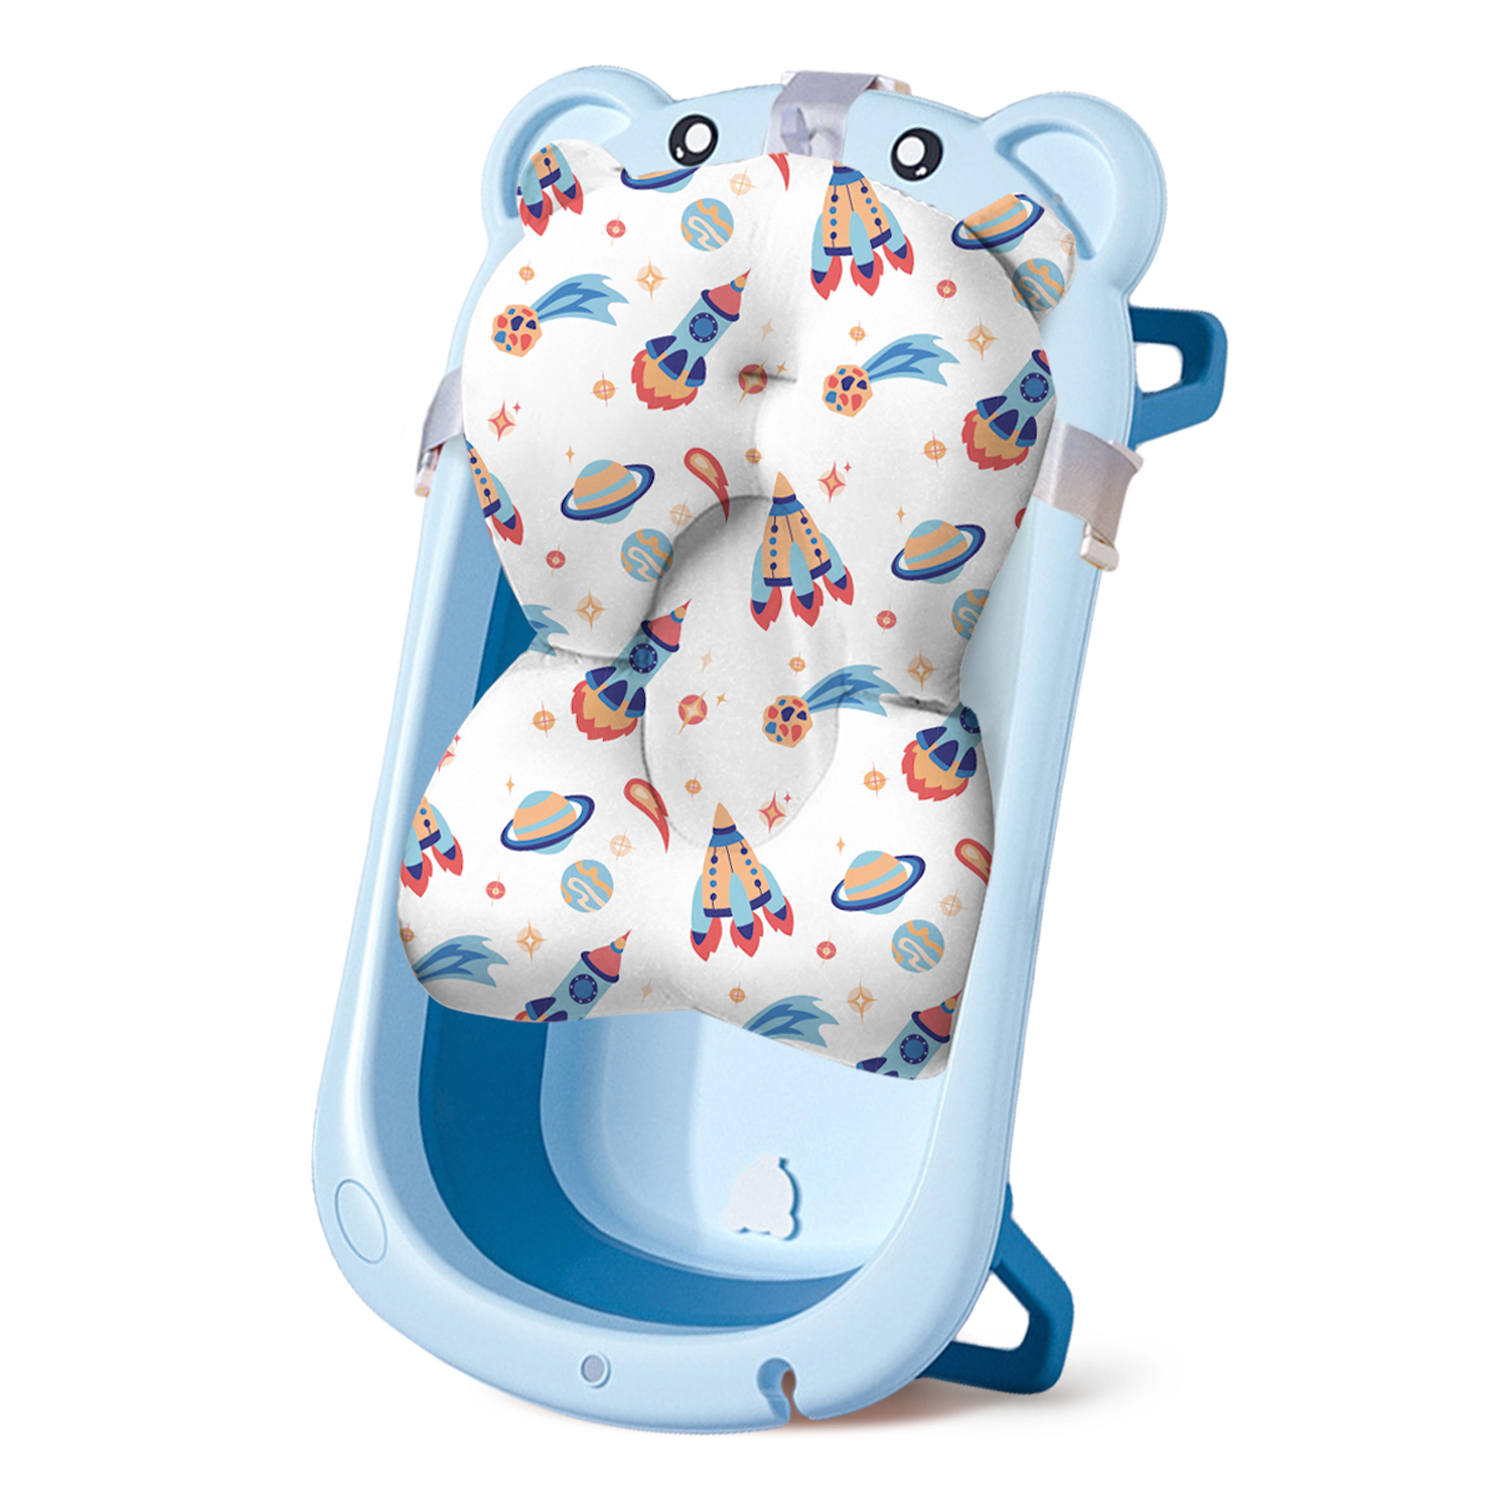 Ванночка для новорожденных LaLa-Kids складная с матрасиком ярко-синим в комплекте - фото 1